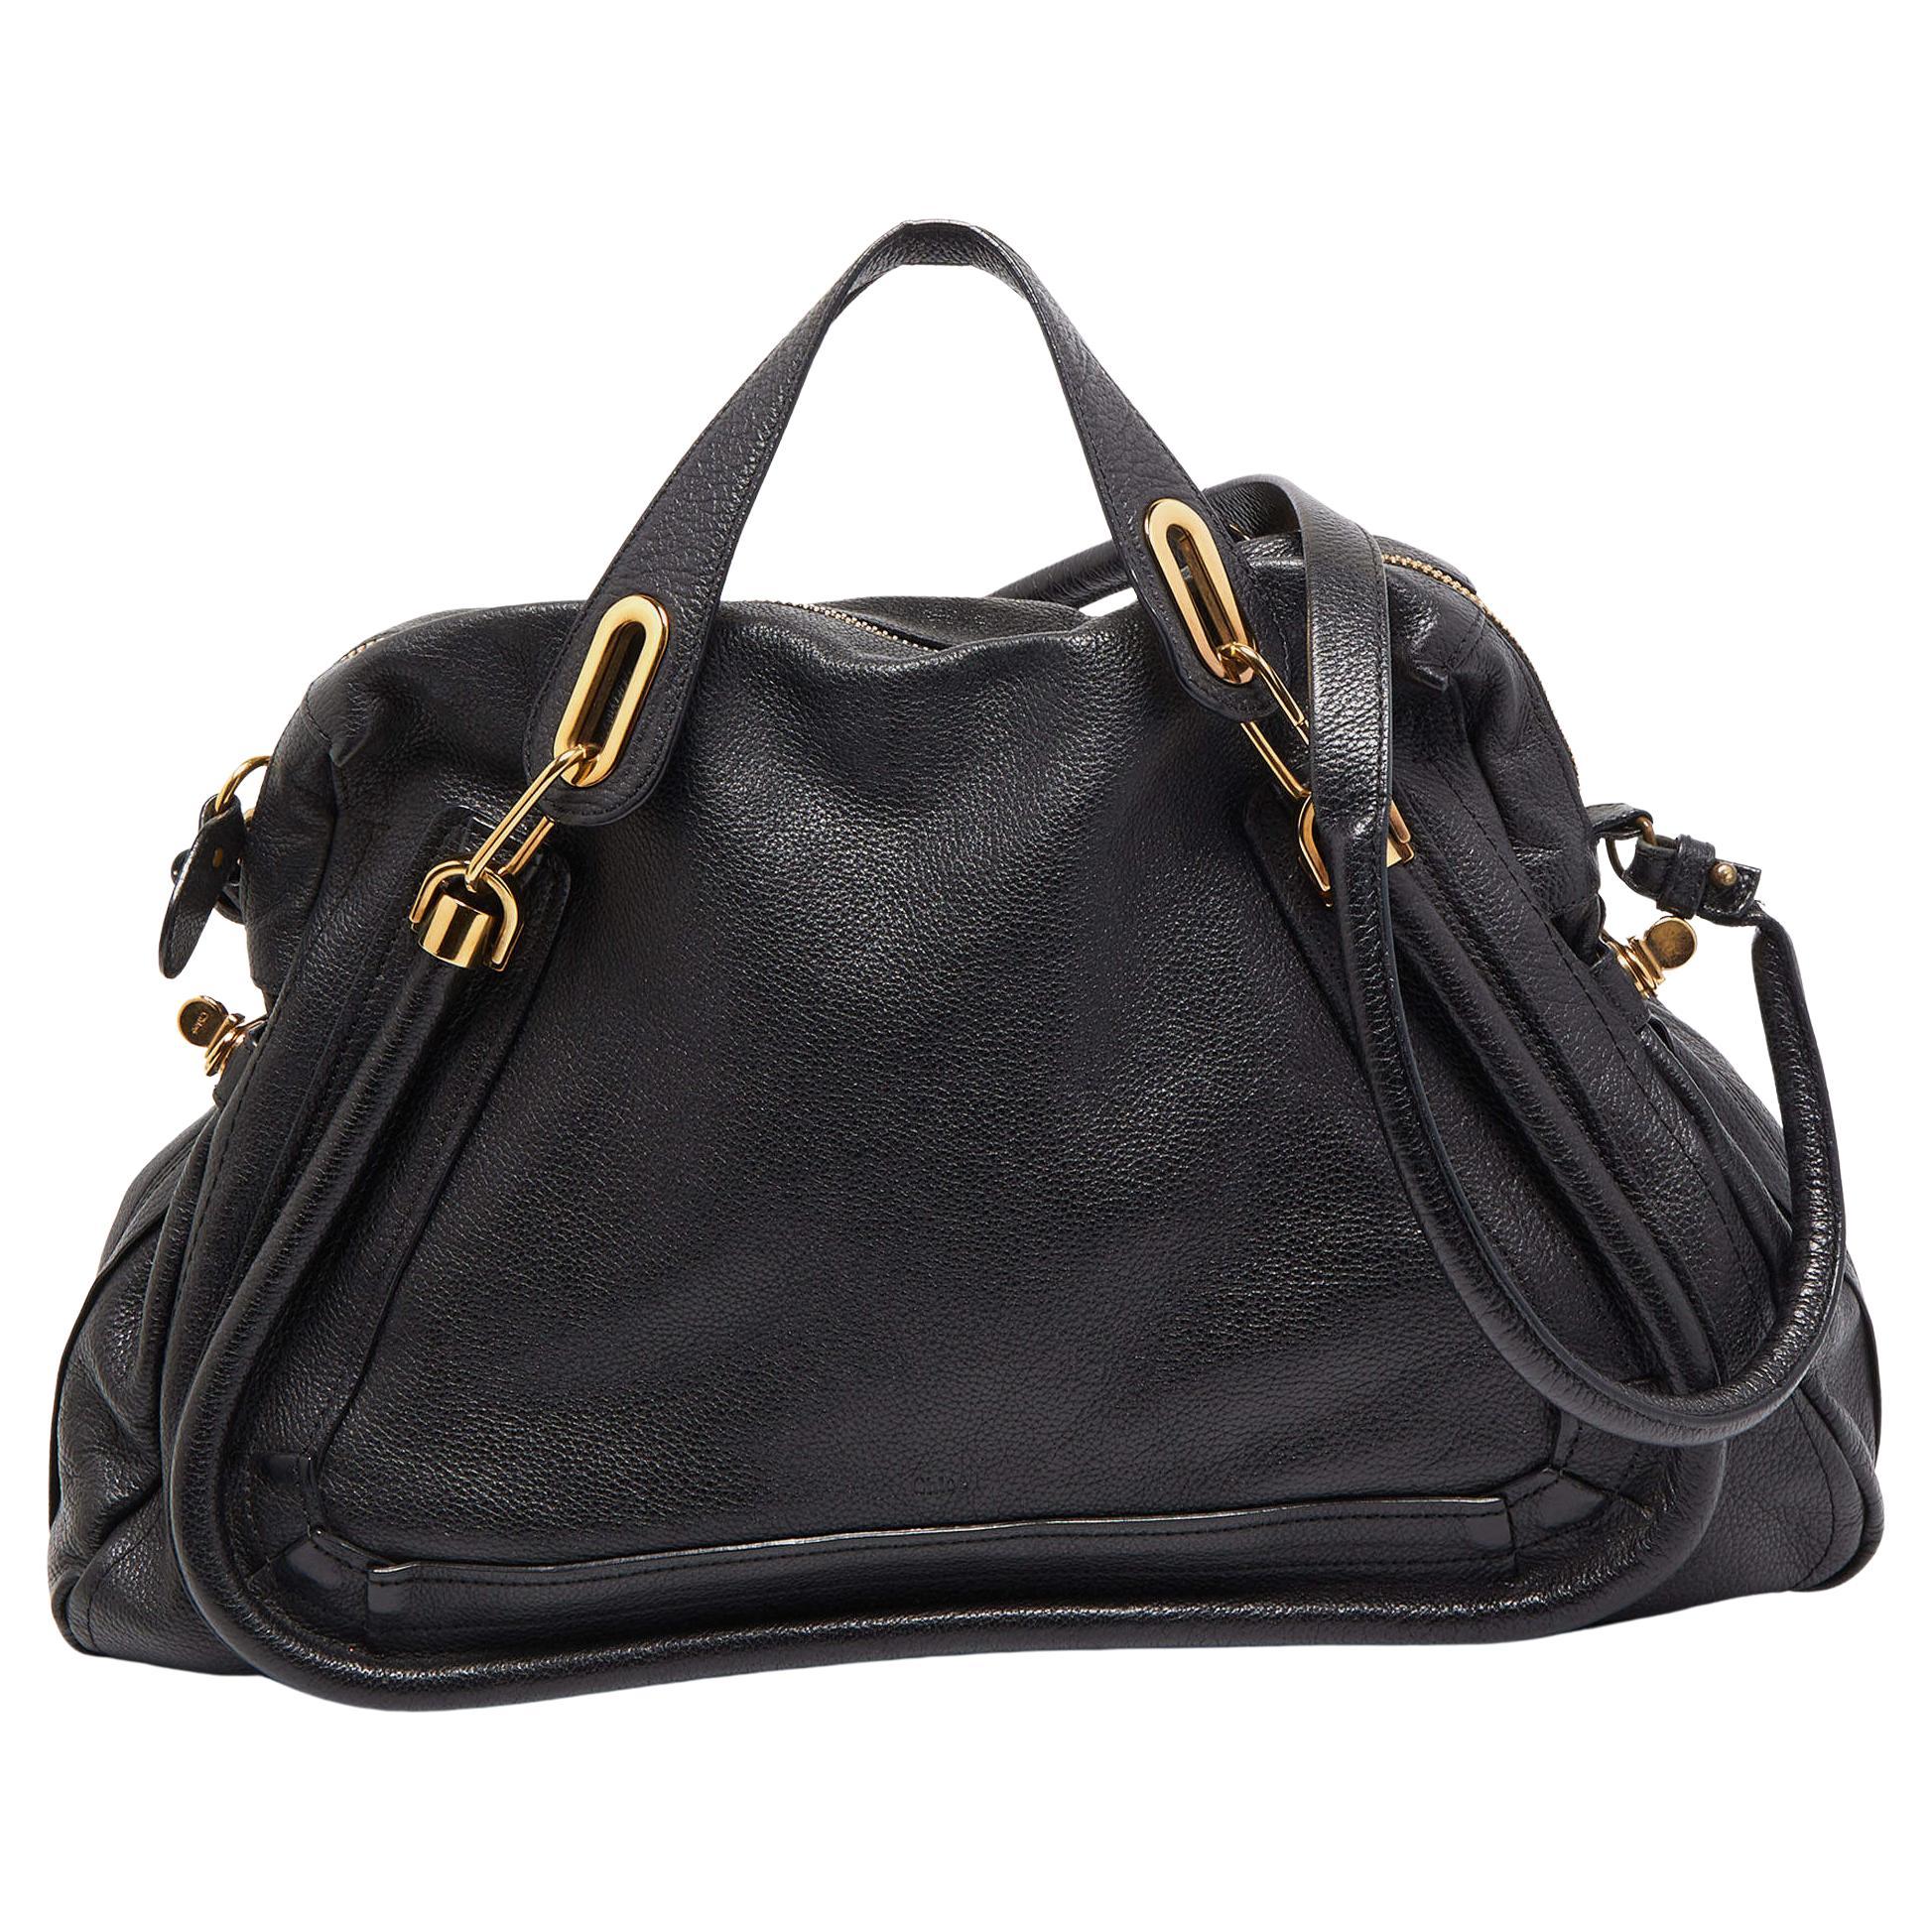 Chloe Black Leather Large Paraty Shoulder Bag